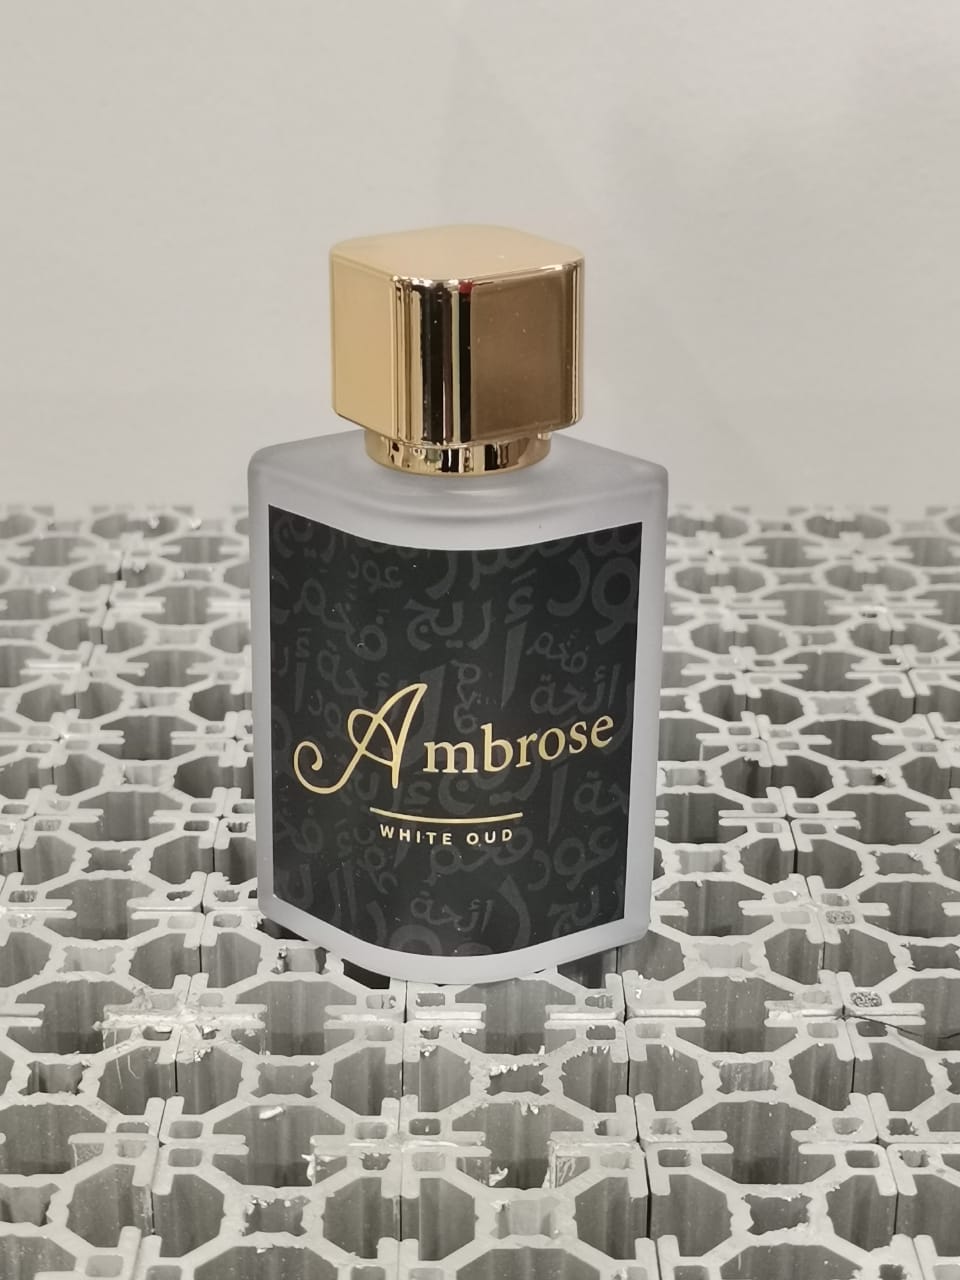 Ambrose Perfume White Oud - AL Capone PremiumAccessories952-4